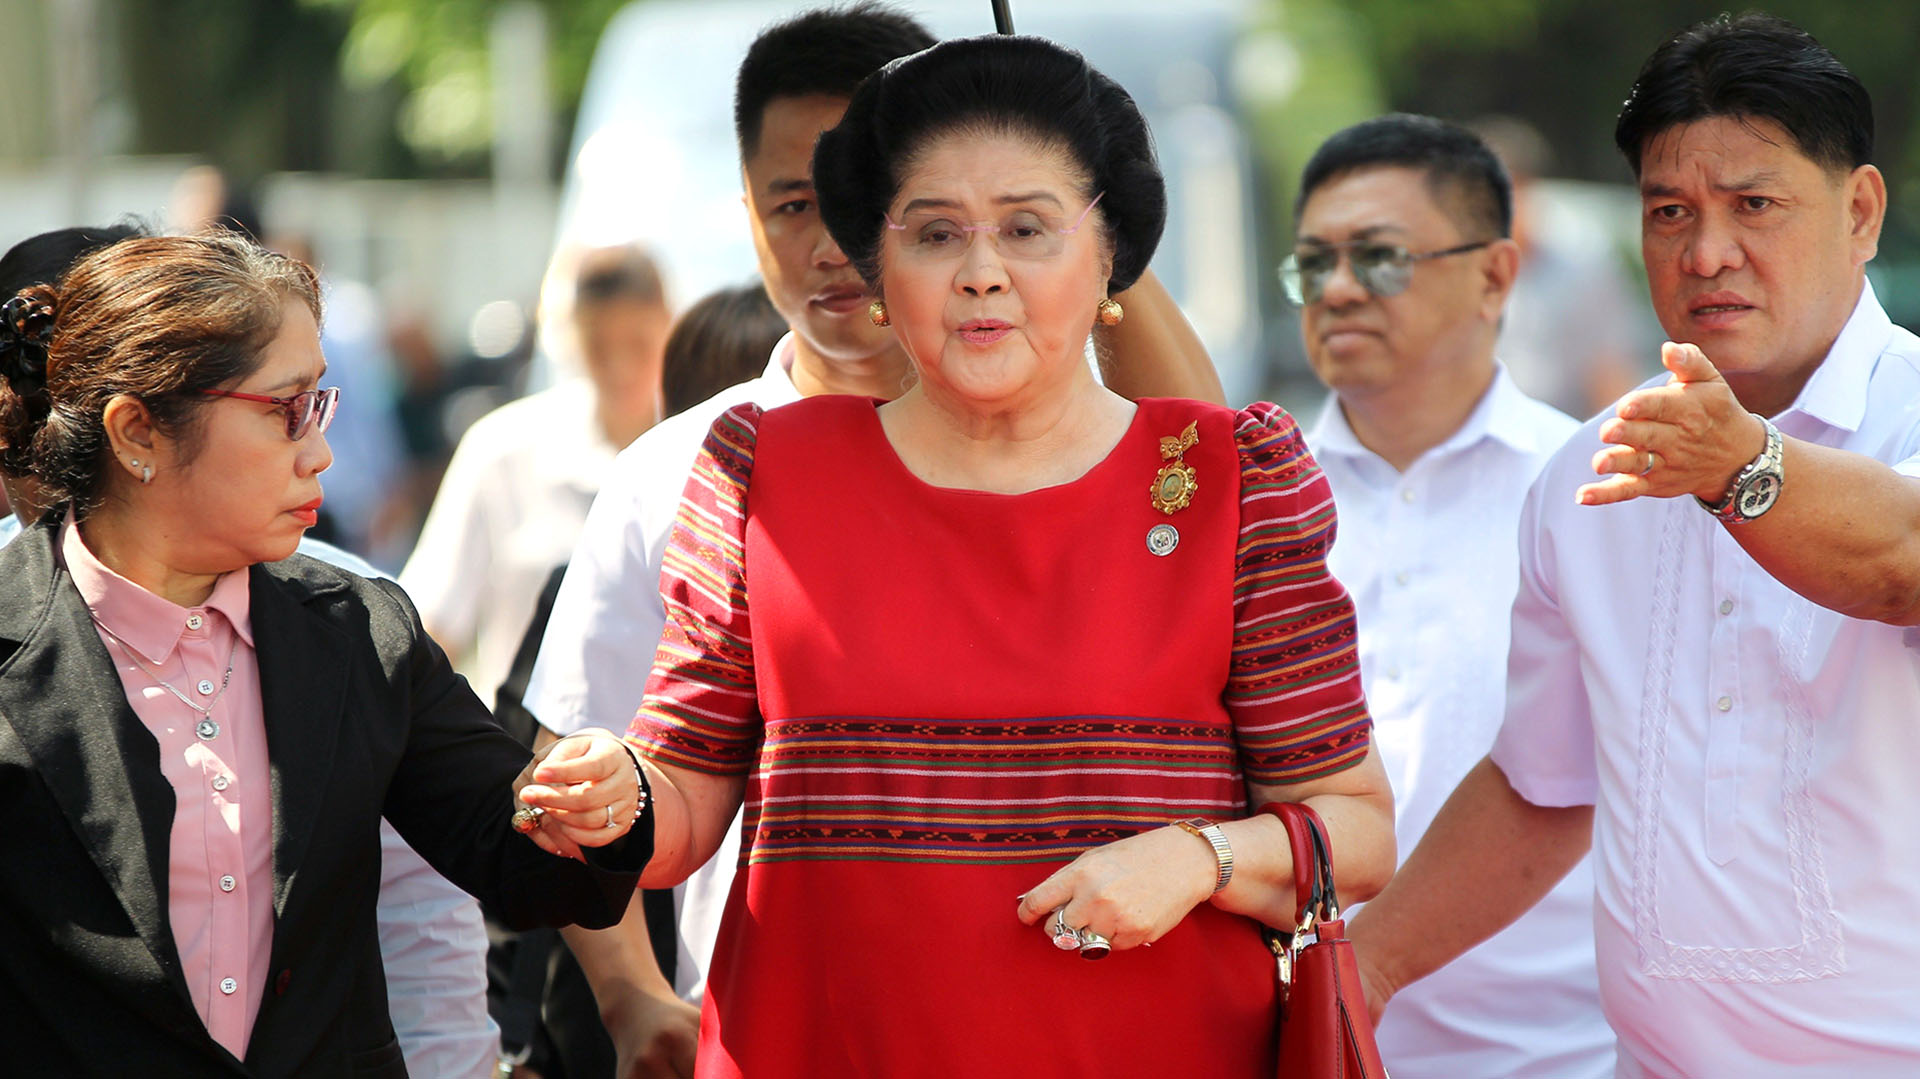 La “Mariposa de hierro”, detrás del dictador de Filipinas: caprichos millonarios y discursos dramáticos